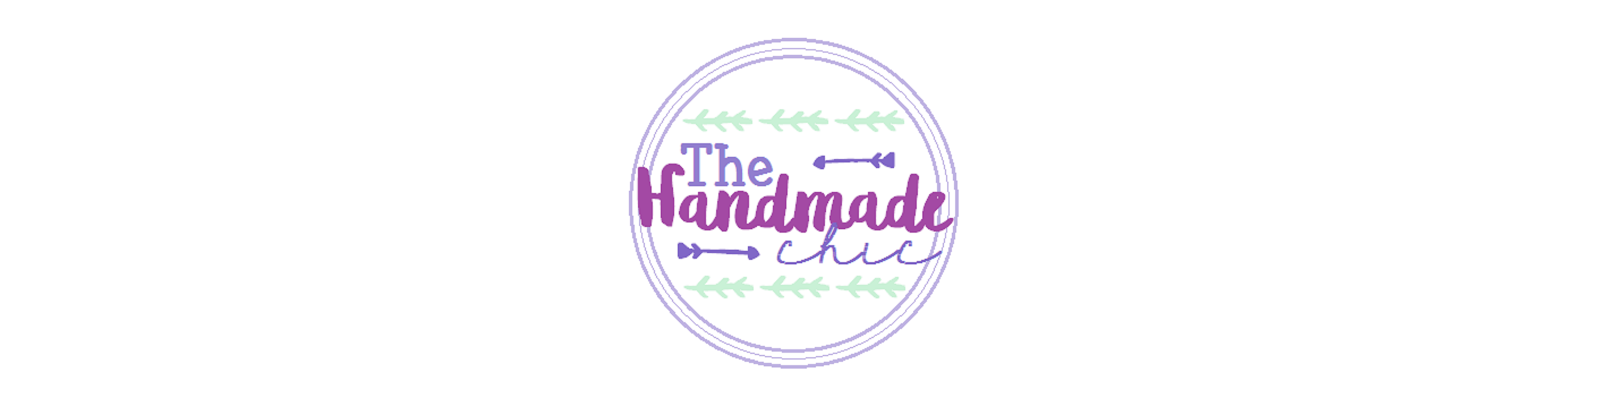 The Handmade Chic